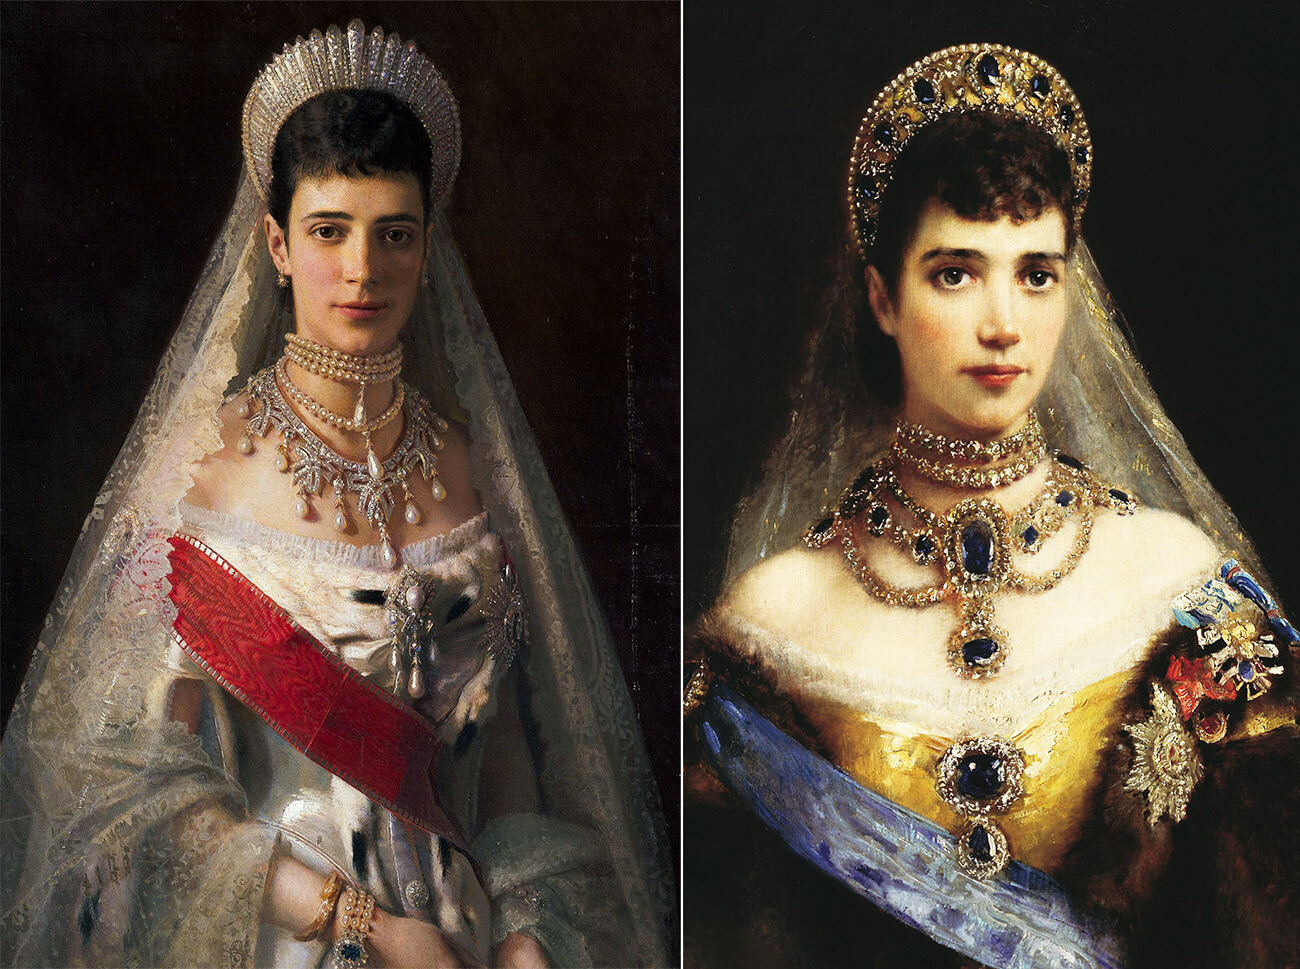 Königin Maria Fjodorowna (Prinzessin Dagmar von Dänemark) in einem Galakleid, 1881, von Iwan Kramskoj (links) / Königin Maria Fjodorowna in einem Kokoschnik, von Konstantin Makowsky (rechts)